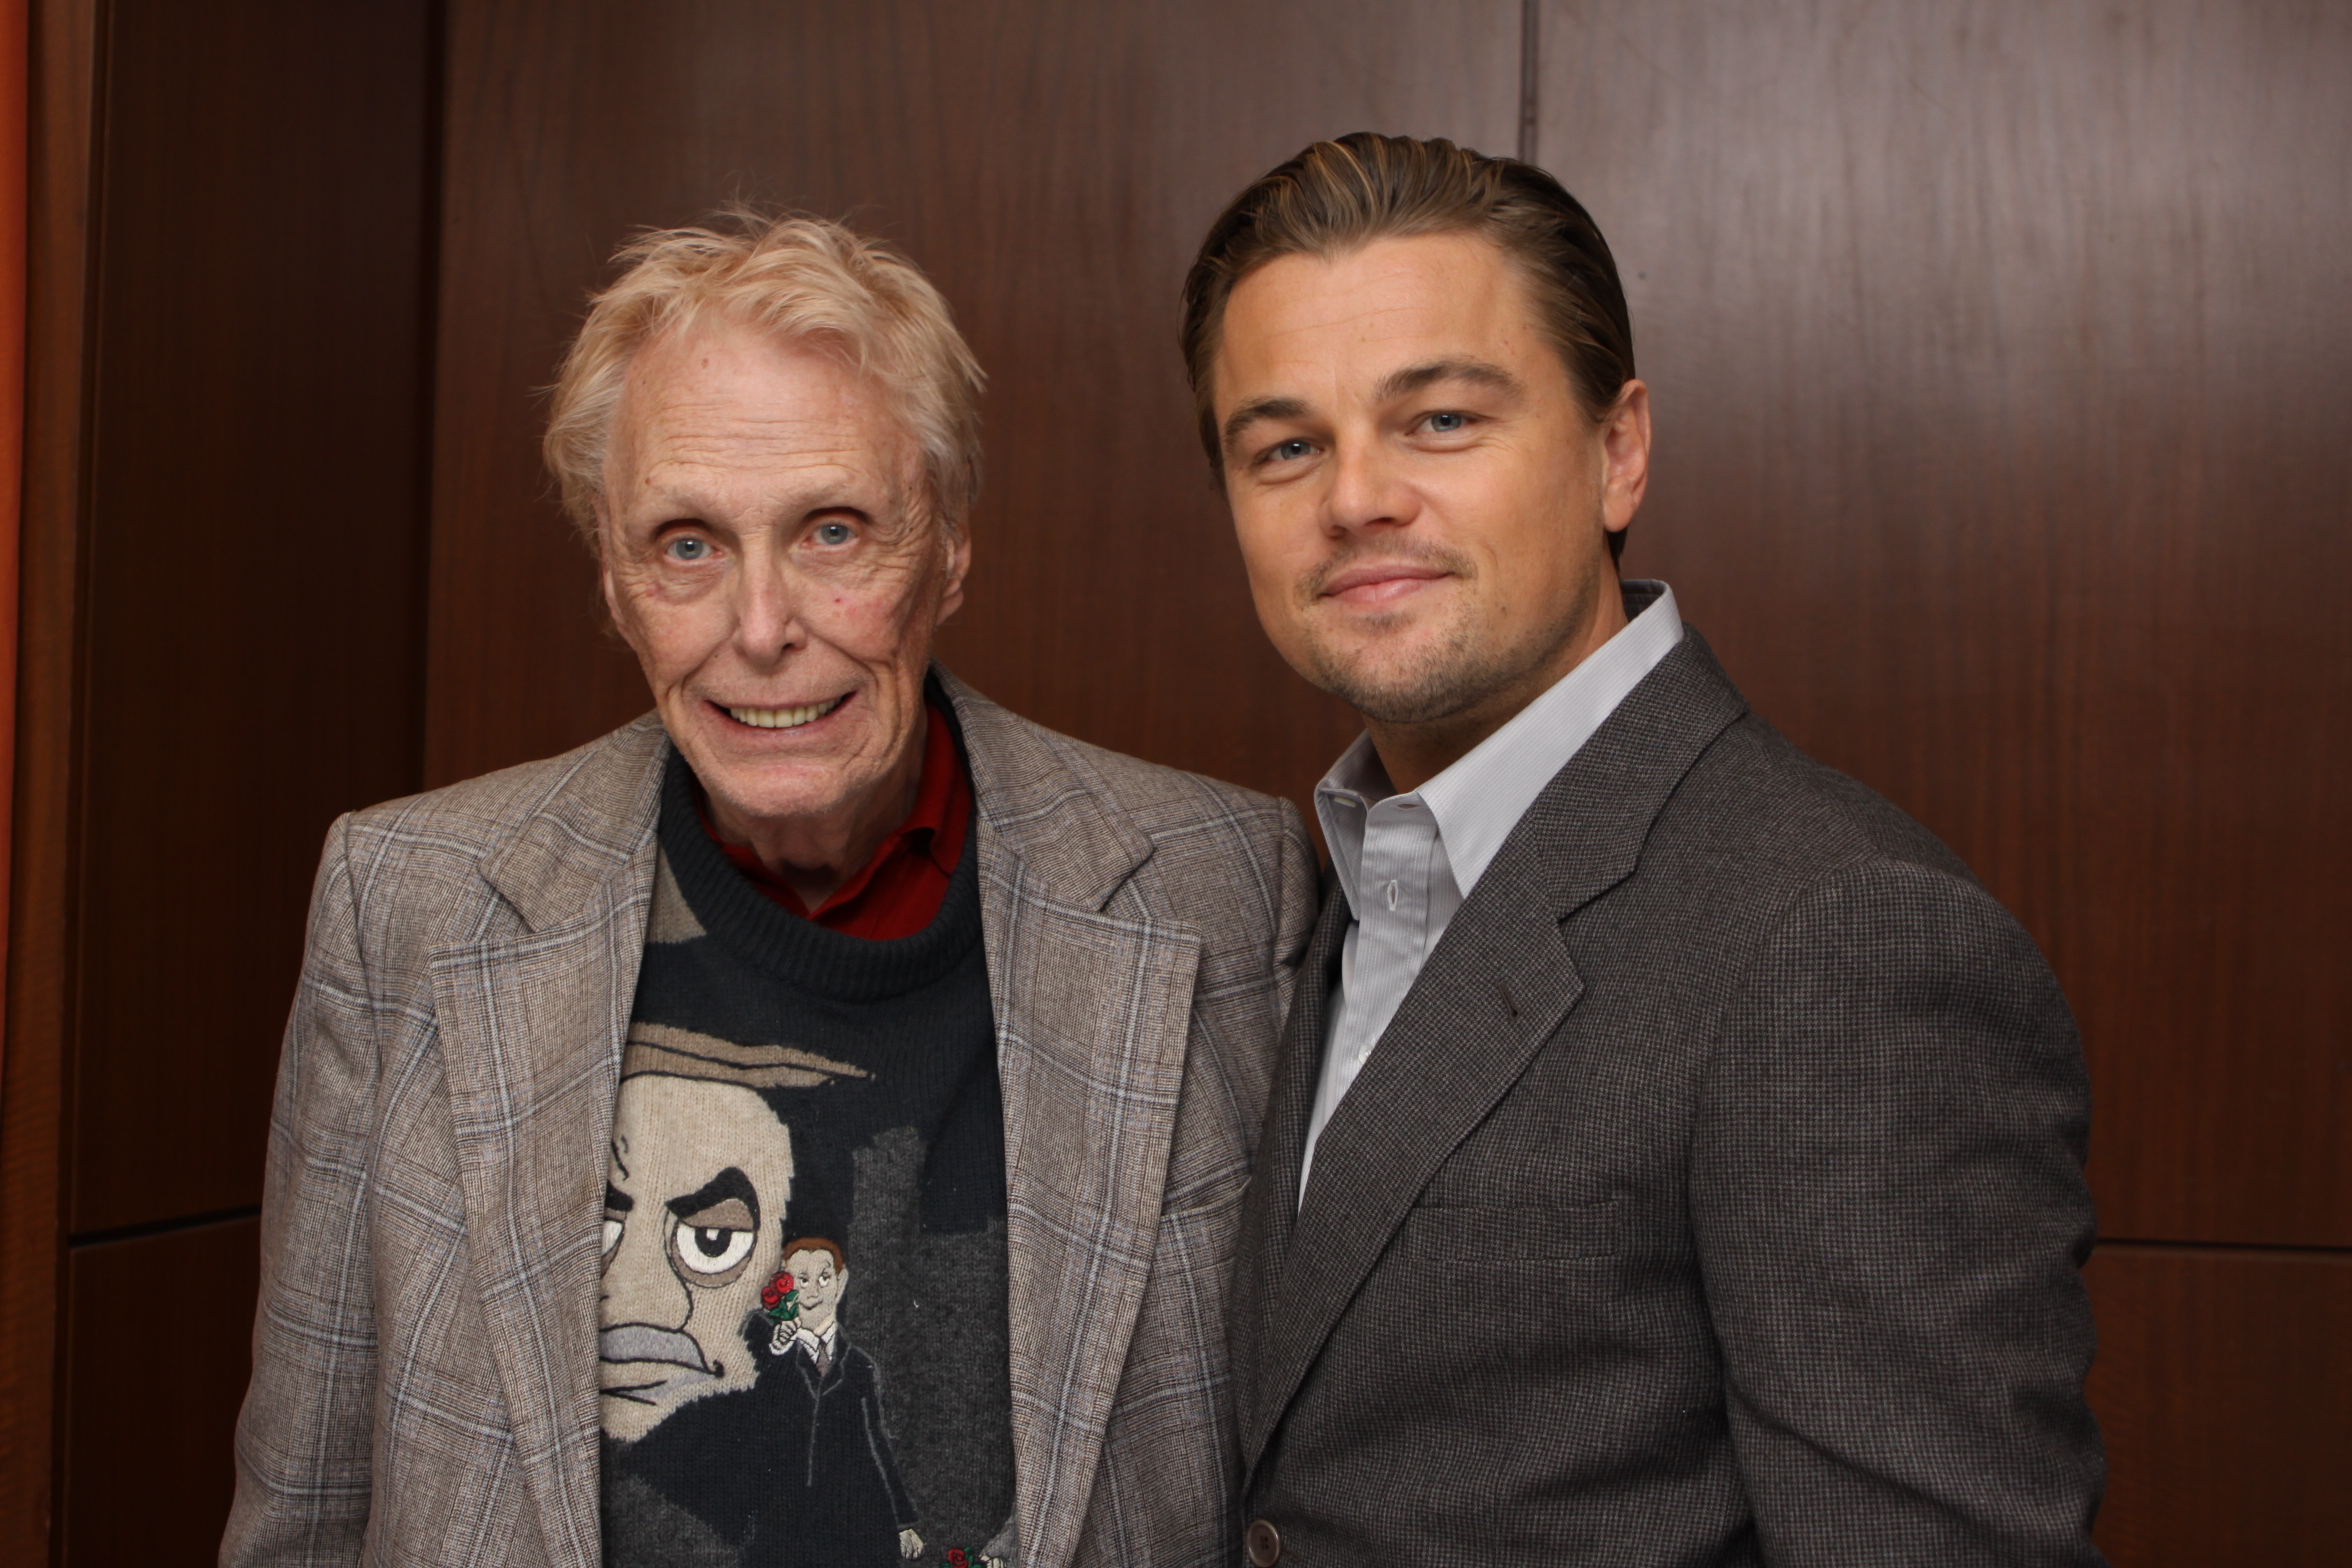 With Leonardo DiCaprio